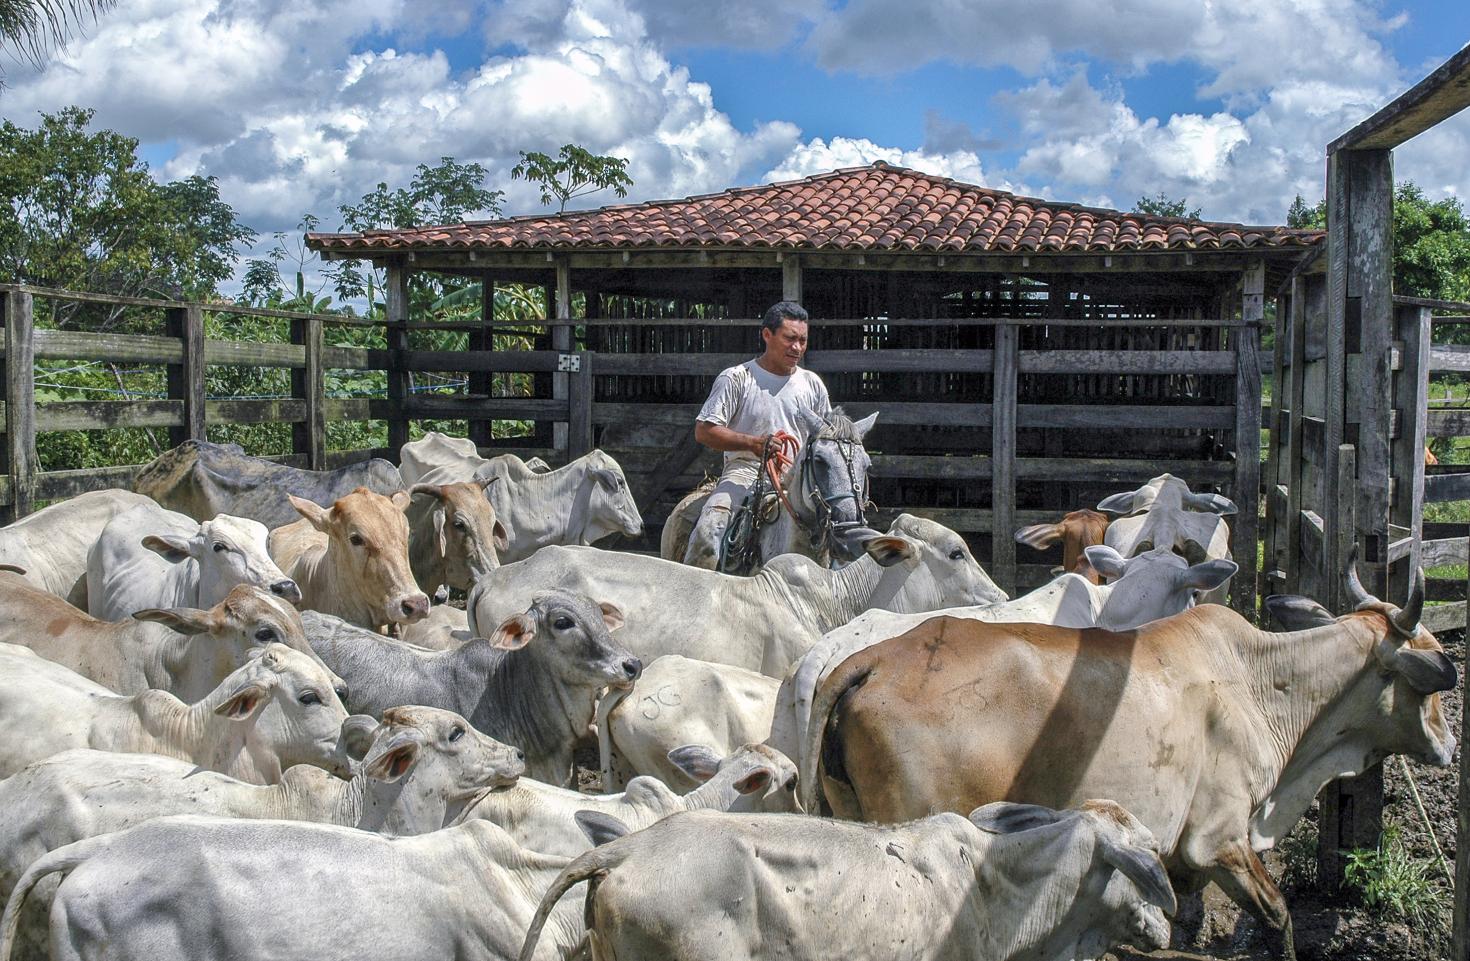  América Latina apuesta por una ganadería más sostenible